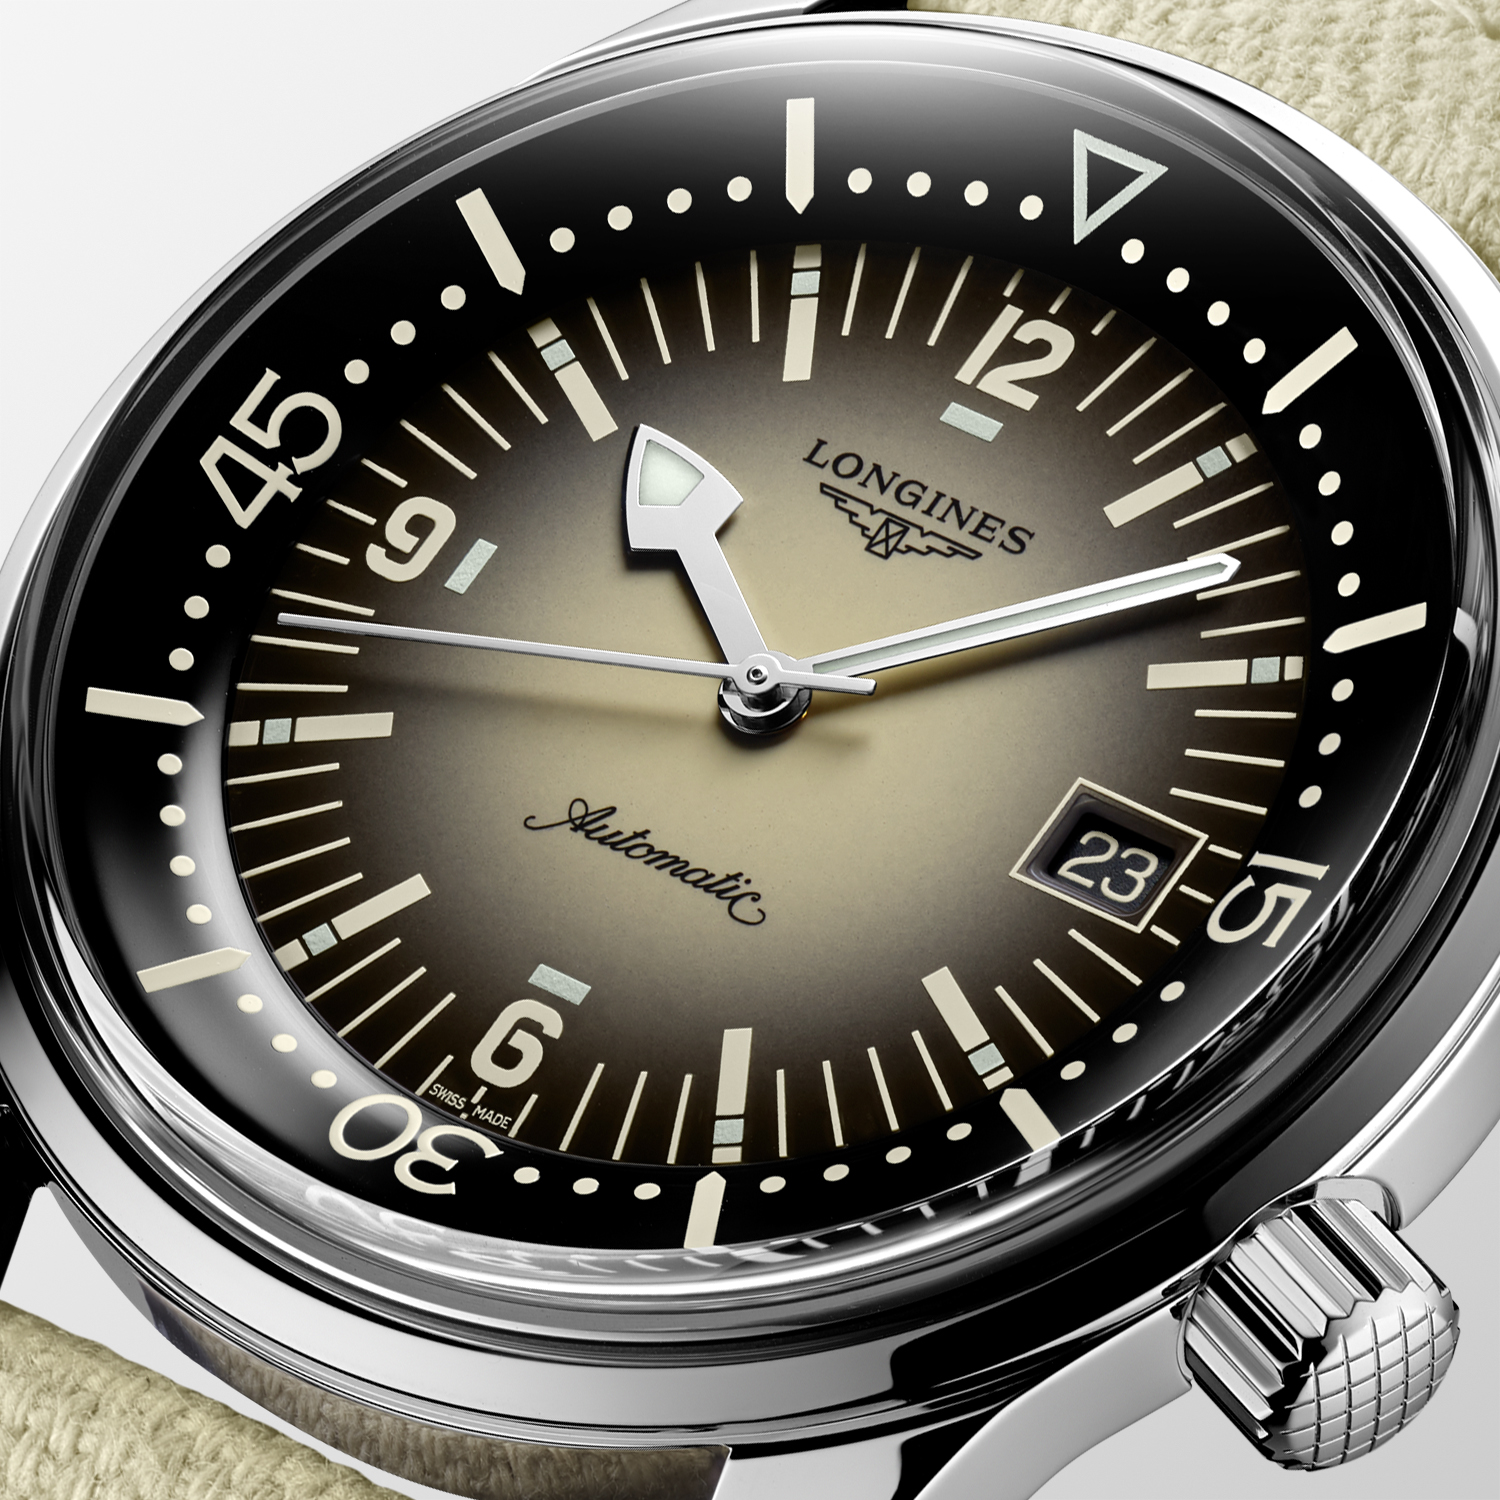 The Longines Legend Diver Watch L3.774.4.30.2 Detalle esfera